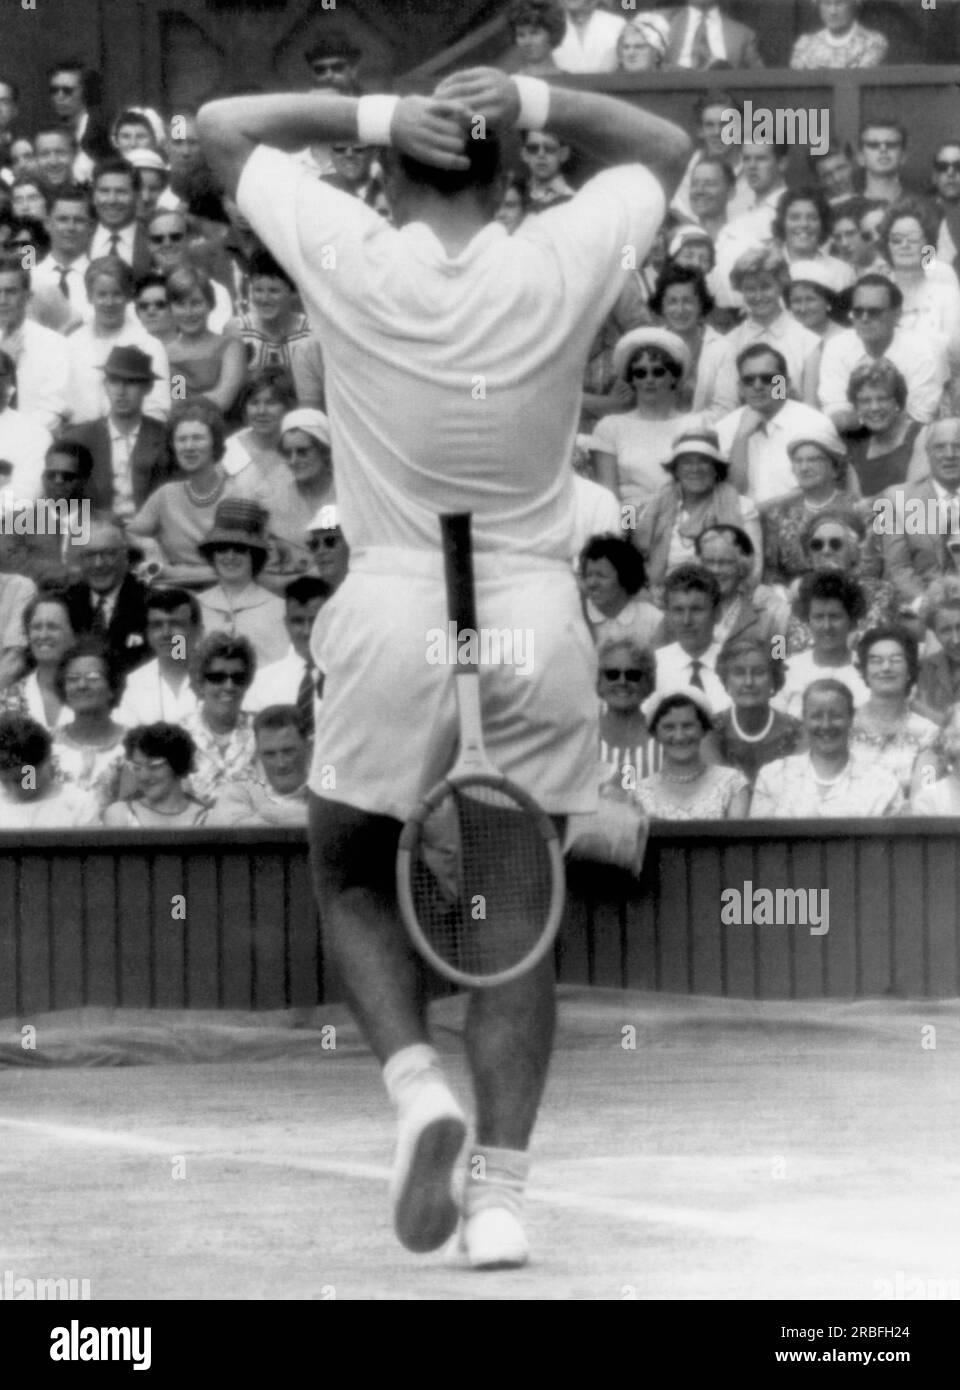 Londres, Angleterre : 6 juillet 1961 le joueur de tennis américain Chuck McKinley lâche sa raquette et affronte la foule lors des demi-finales masculines à Wimbledon. Il remporte le match, mais perd face à Rod laver en finale. Banque D'Images